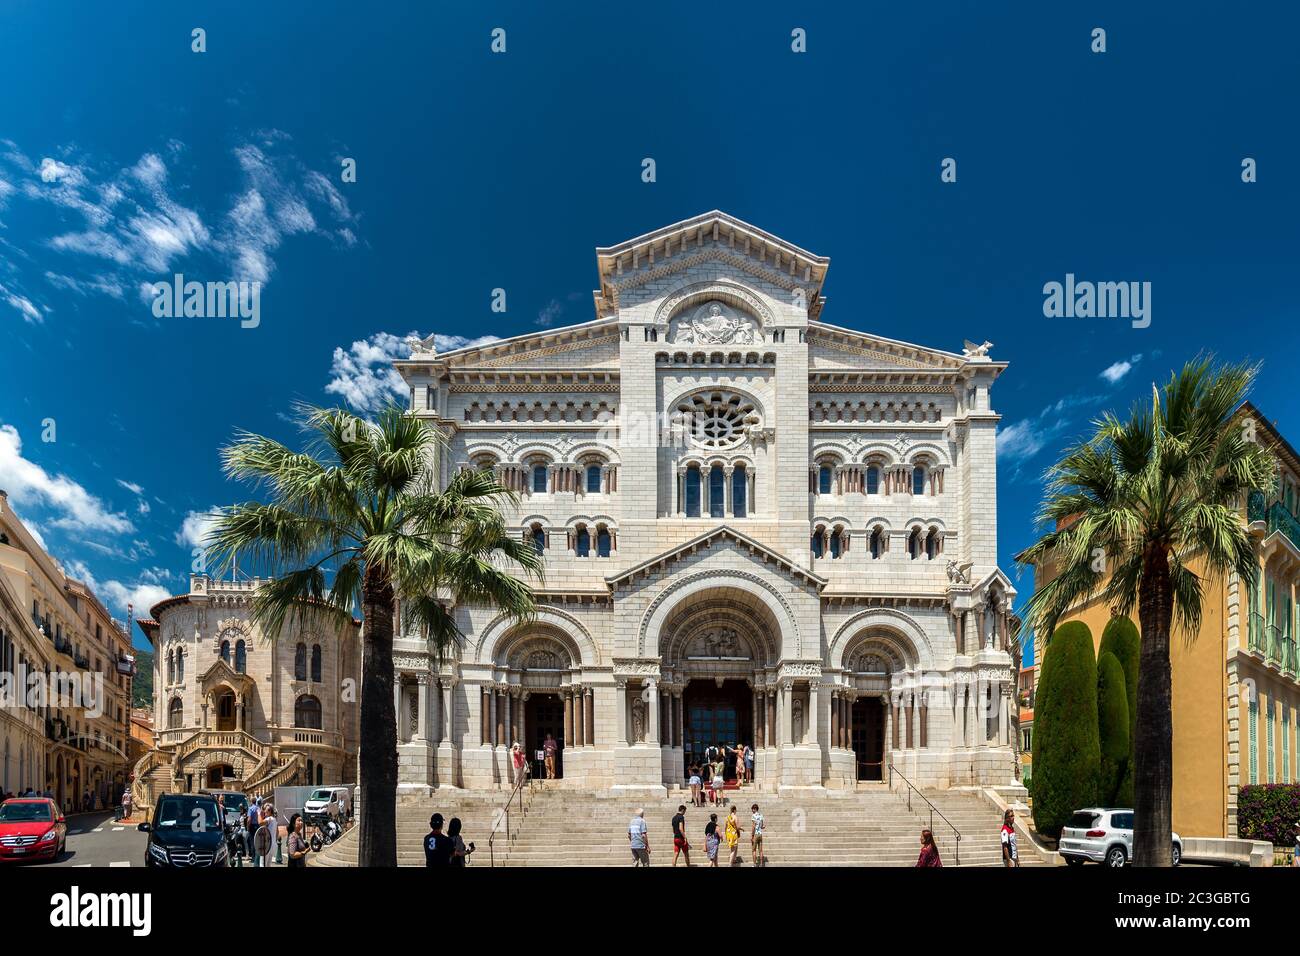 Monaco-Ville, Monaco - 13 Giugno 2019 : esterno della Cattedrale di Monaco. E' famoso per le tombe della Principessa Grace e del Principe Rainier. Foto Stock